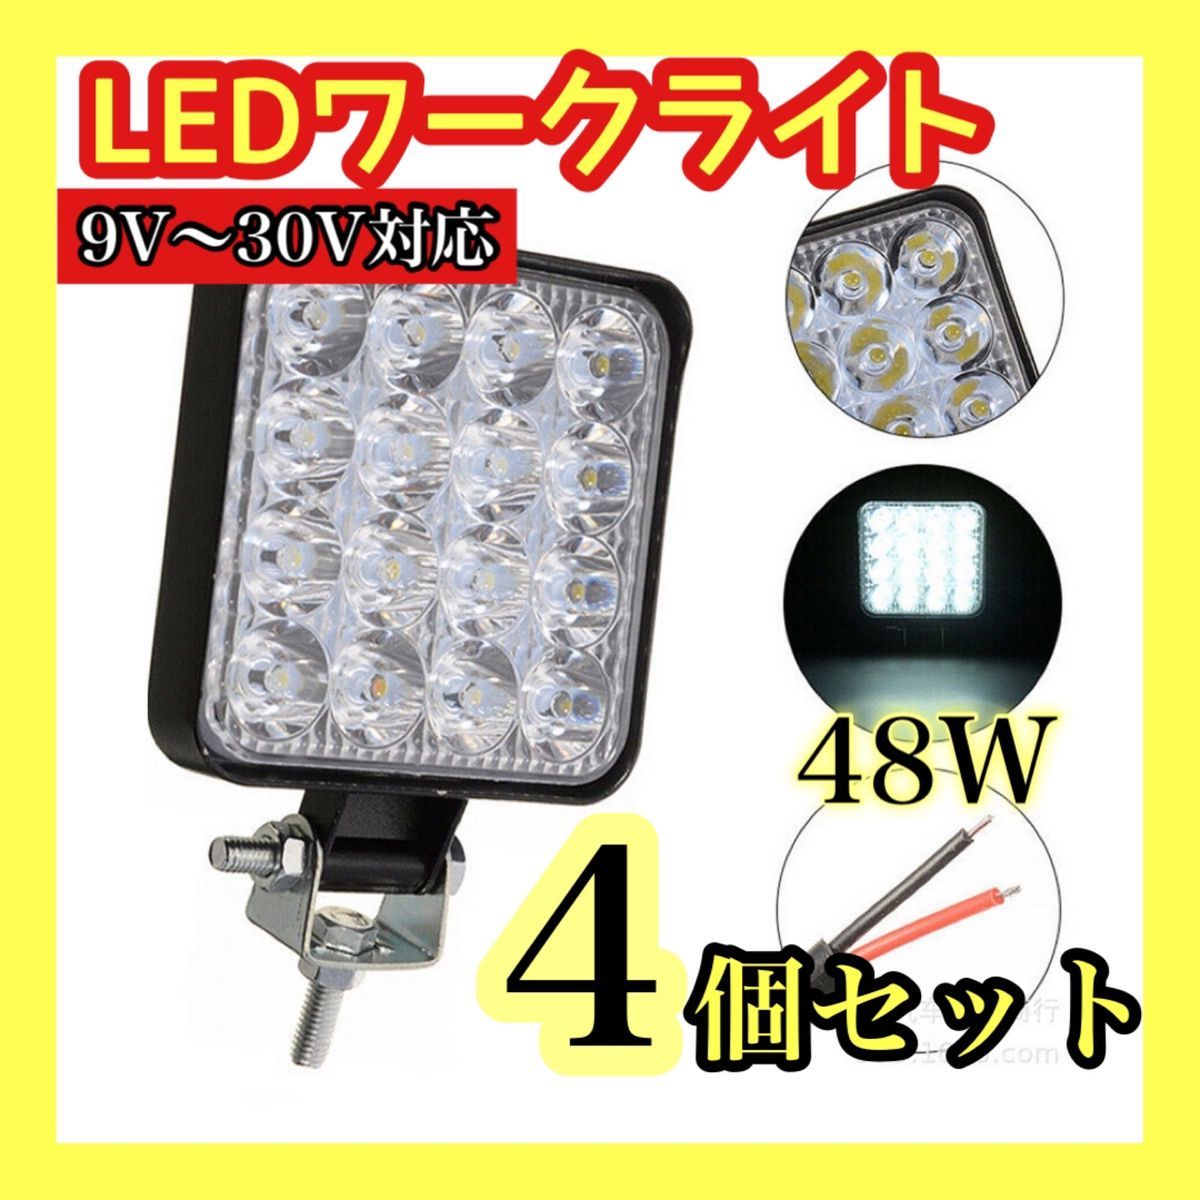 LEDワークライト 4個セット ライト ランプ ワークライト 車 サーチライト 作業灯 照明